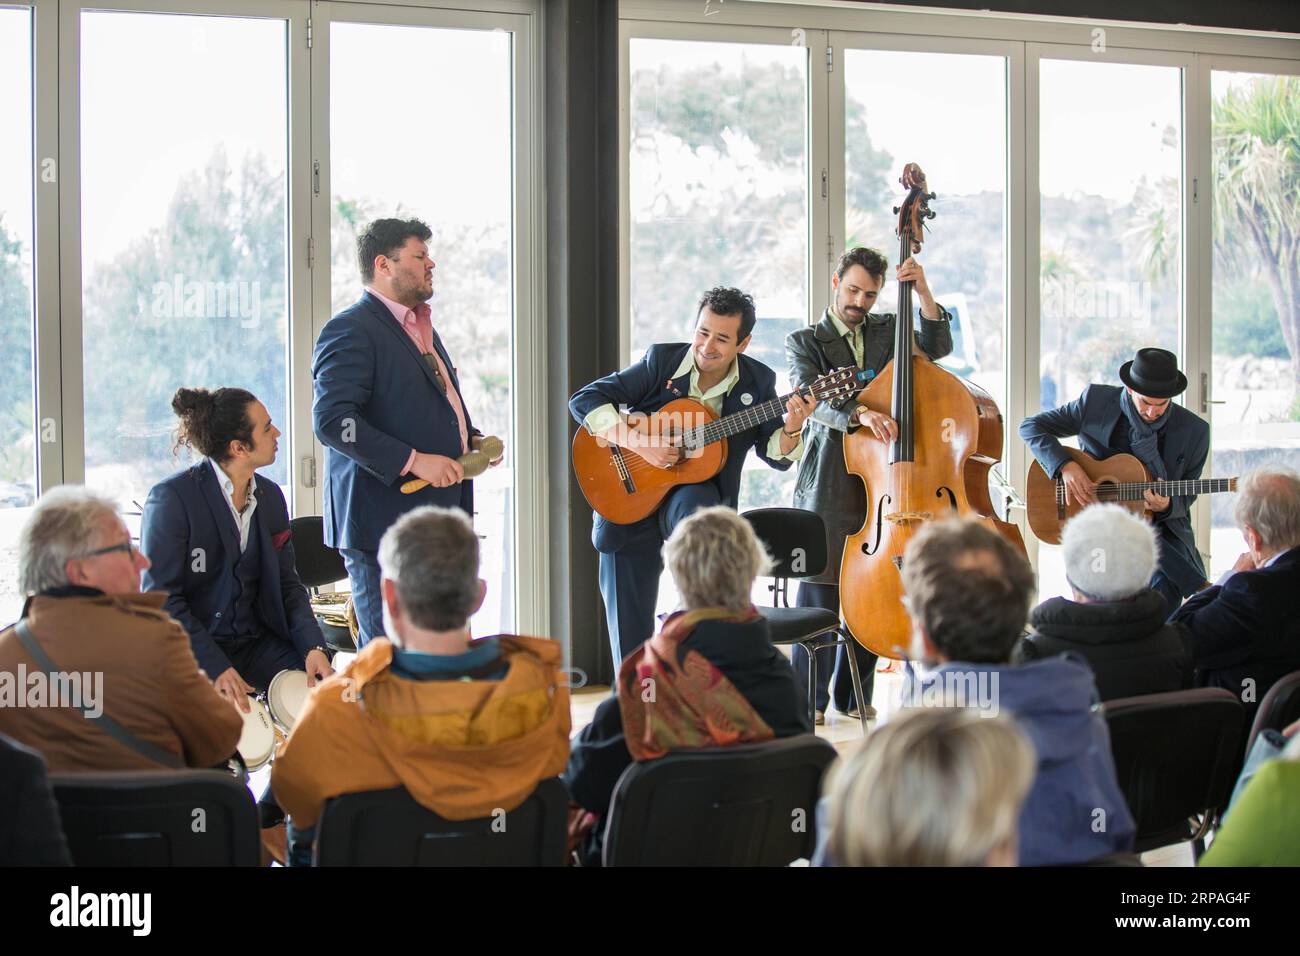 (190509) -- CANBERRA, 9 maggio 2019 (Xinhua) -- i musicisti si esibiscono durante un concerto del 25° Canberra International Music Festival (CIMF) presso l'Osservatorio Mount Stromlo nella capitale australiana Canberra, 8 maggio 2019. Il festival, che presenta la musica di Bach come uno dei suoi temi, ha più di 40 eventi in 10 giorni in diversi luoghi di Canberra. (Xinhua/Liang Tianzhou) AUSTRALIA-CANBERRA-INTERNATIONAL MUSIC FESTIVAL PUBLICATIONxNOTxINxCHN Foto Stock